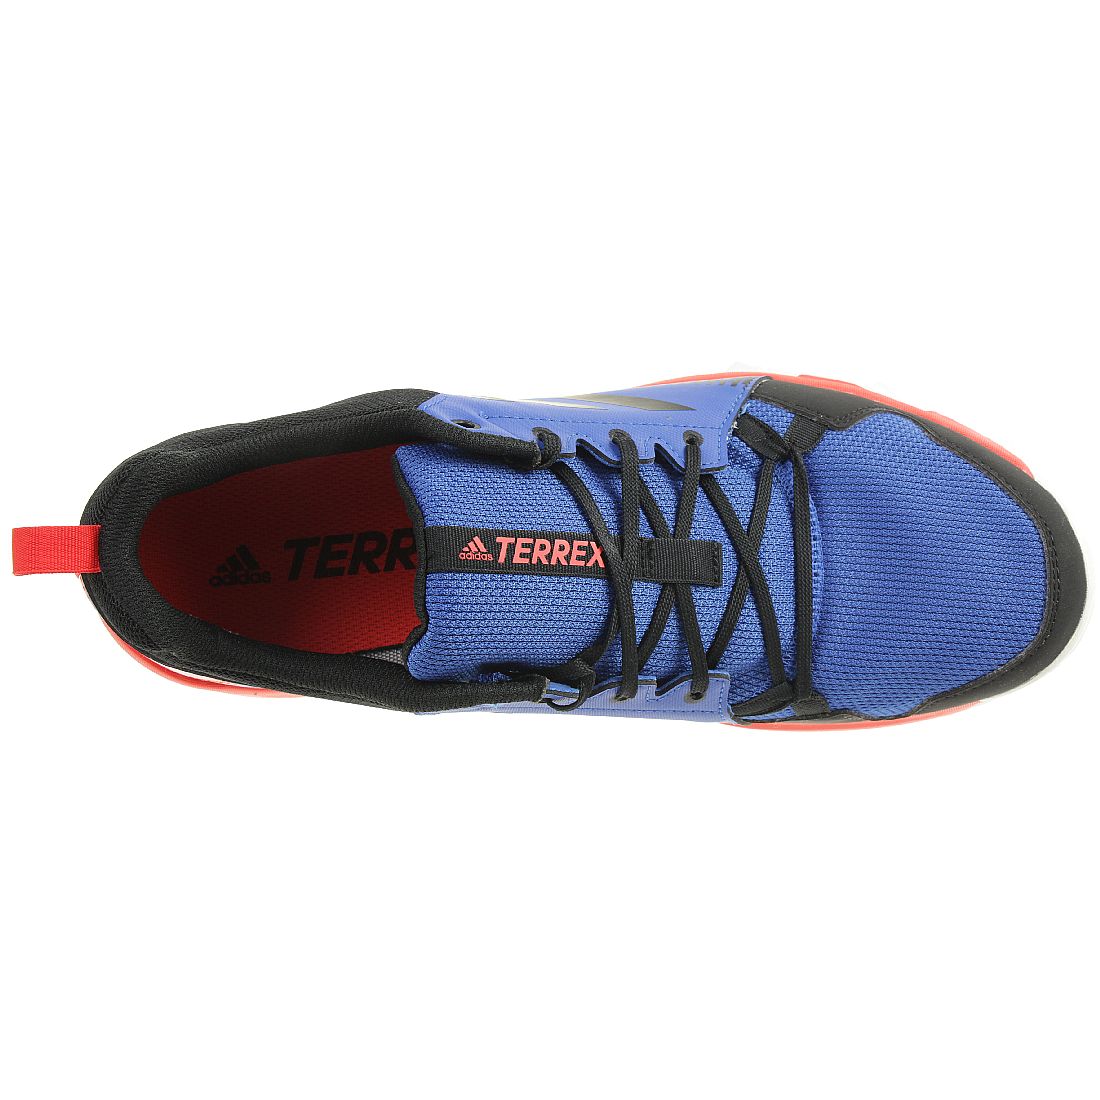 Adidas Herren Terrex Tracerocker GTX Trailrunning Schuh Wanderschuh Sneaker 